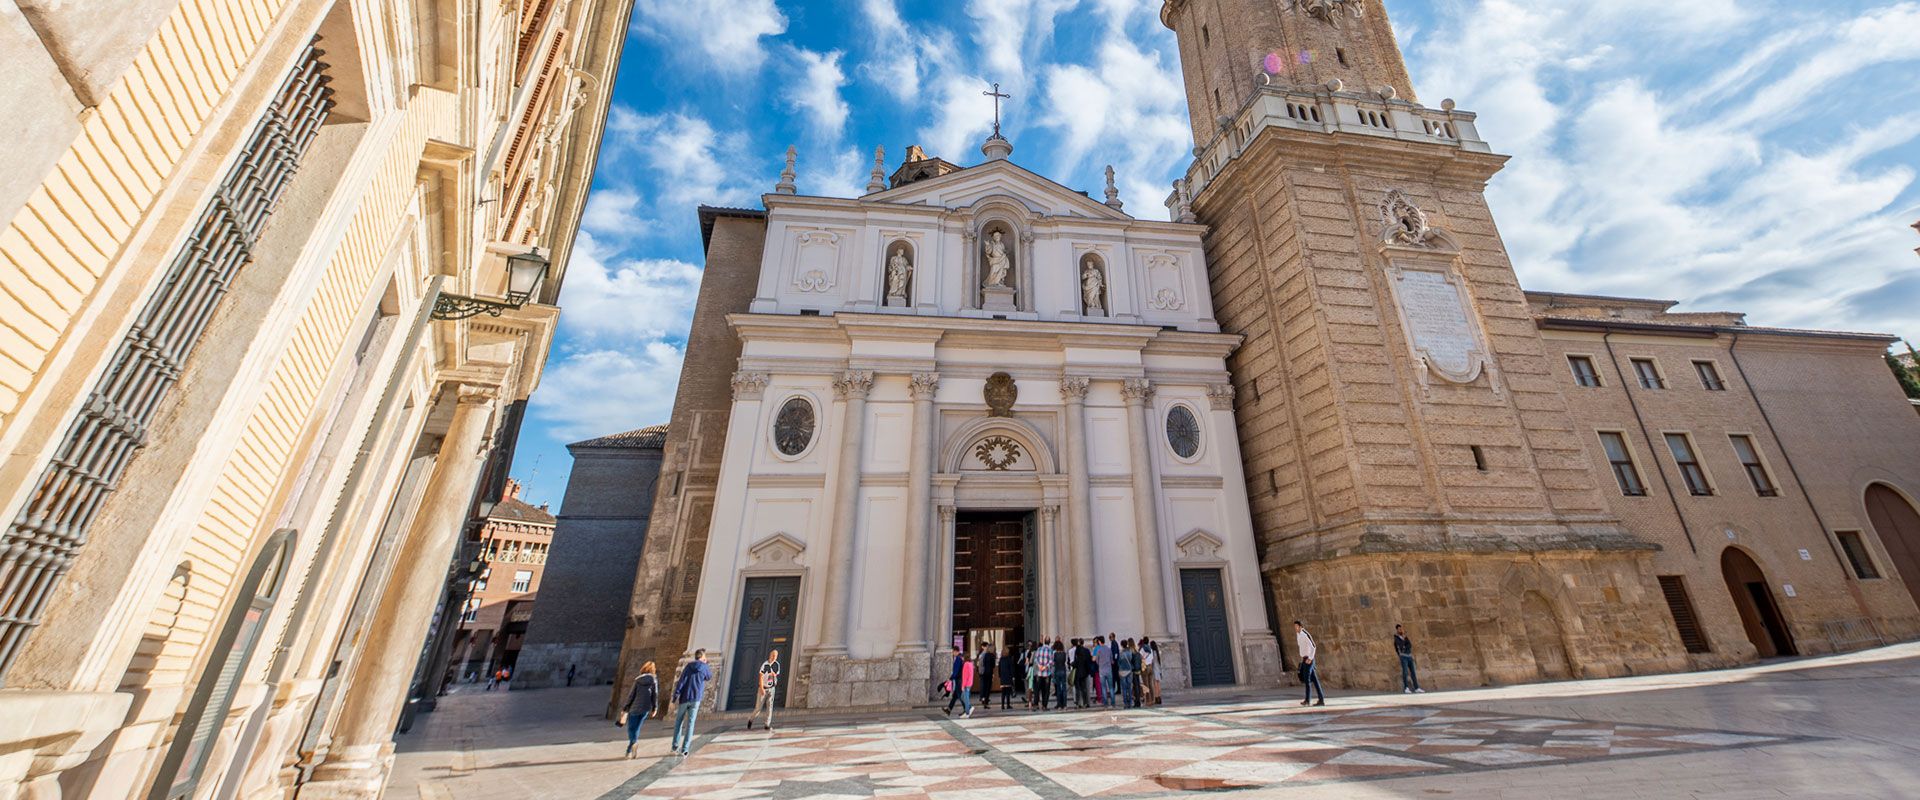 Cultural visit - Catedrales de Zaragoza